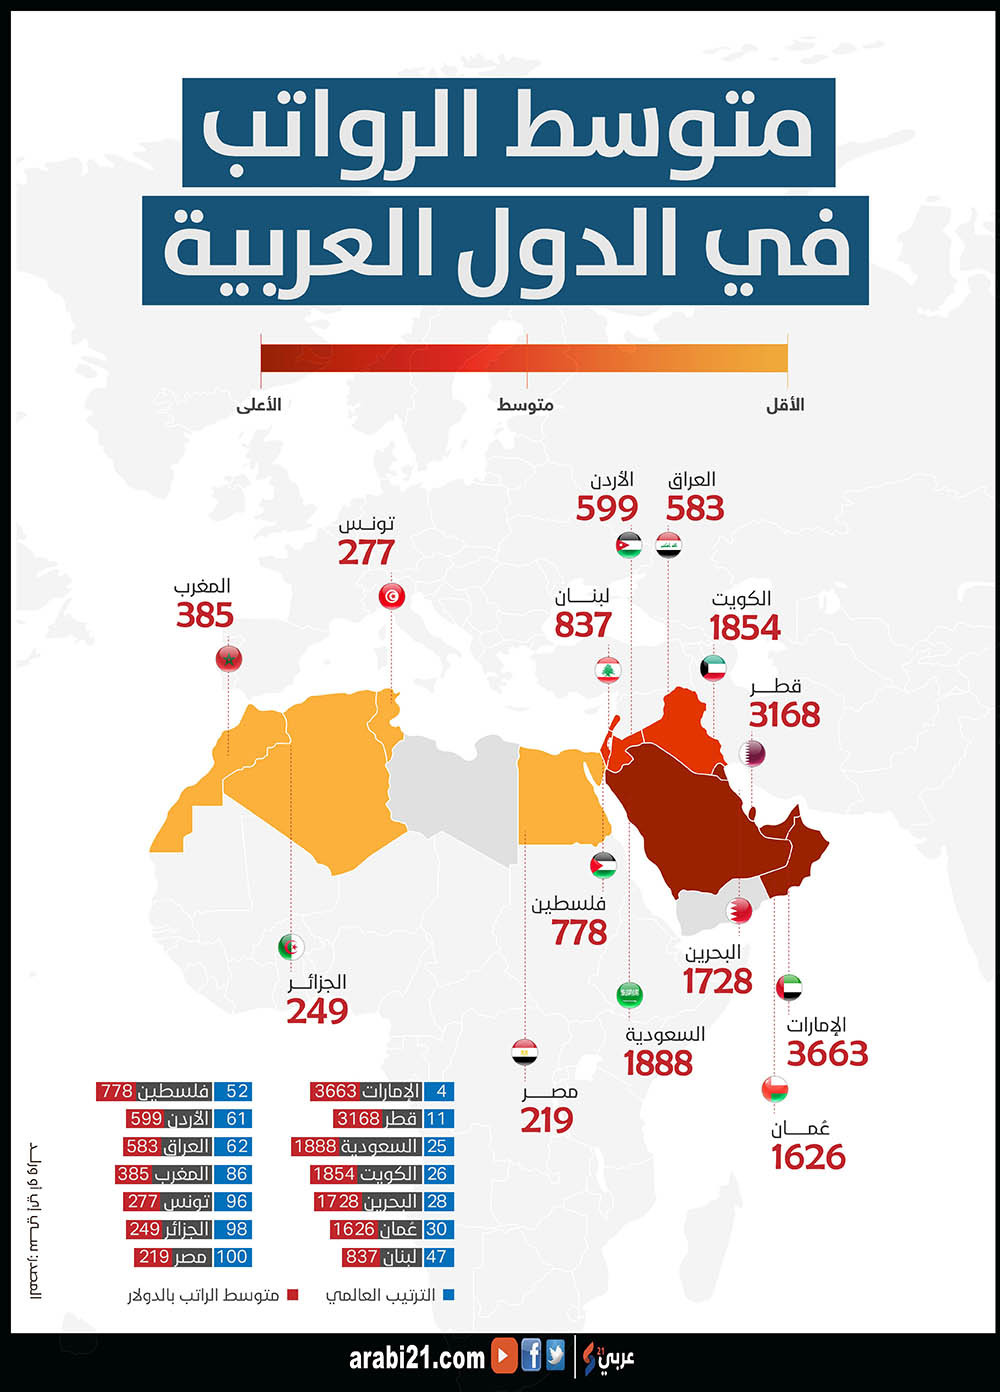 متوسط الرواتب في الدول العربية